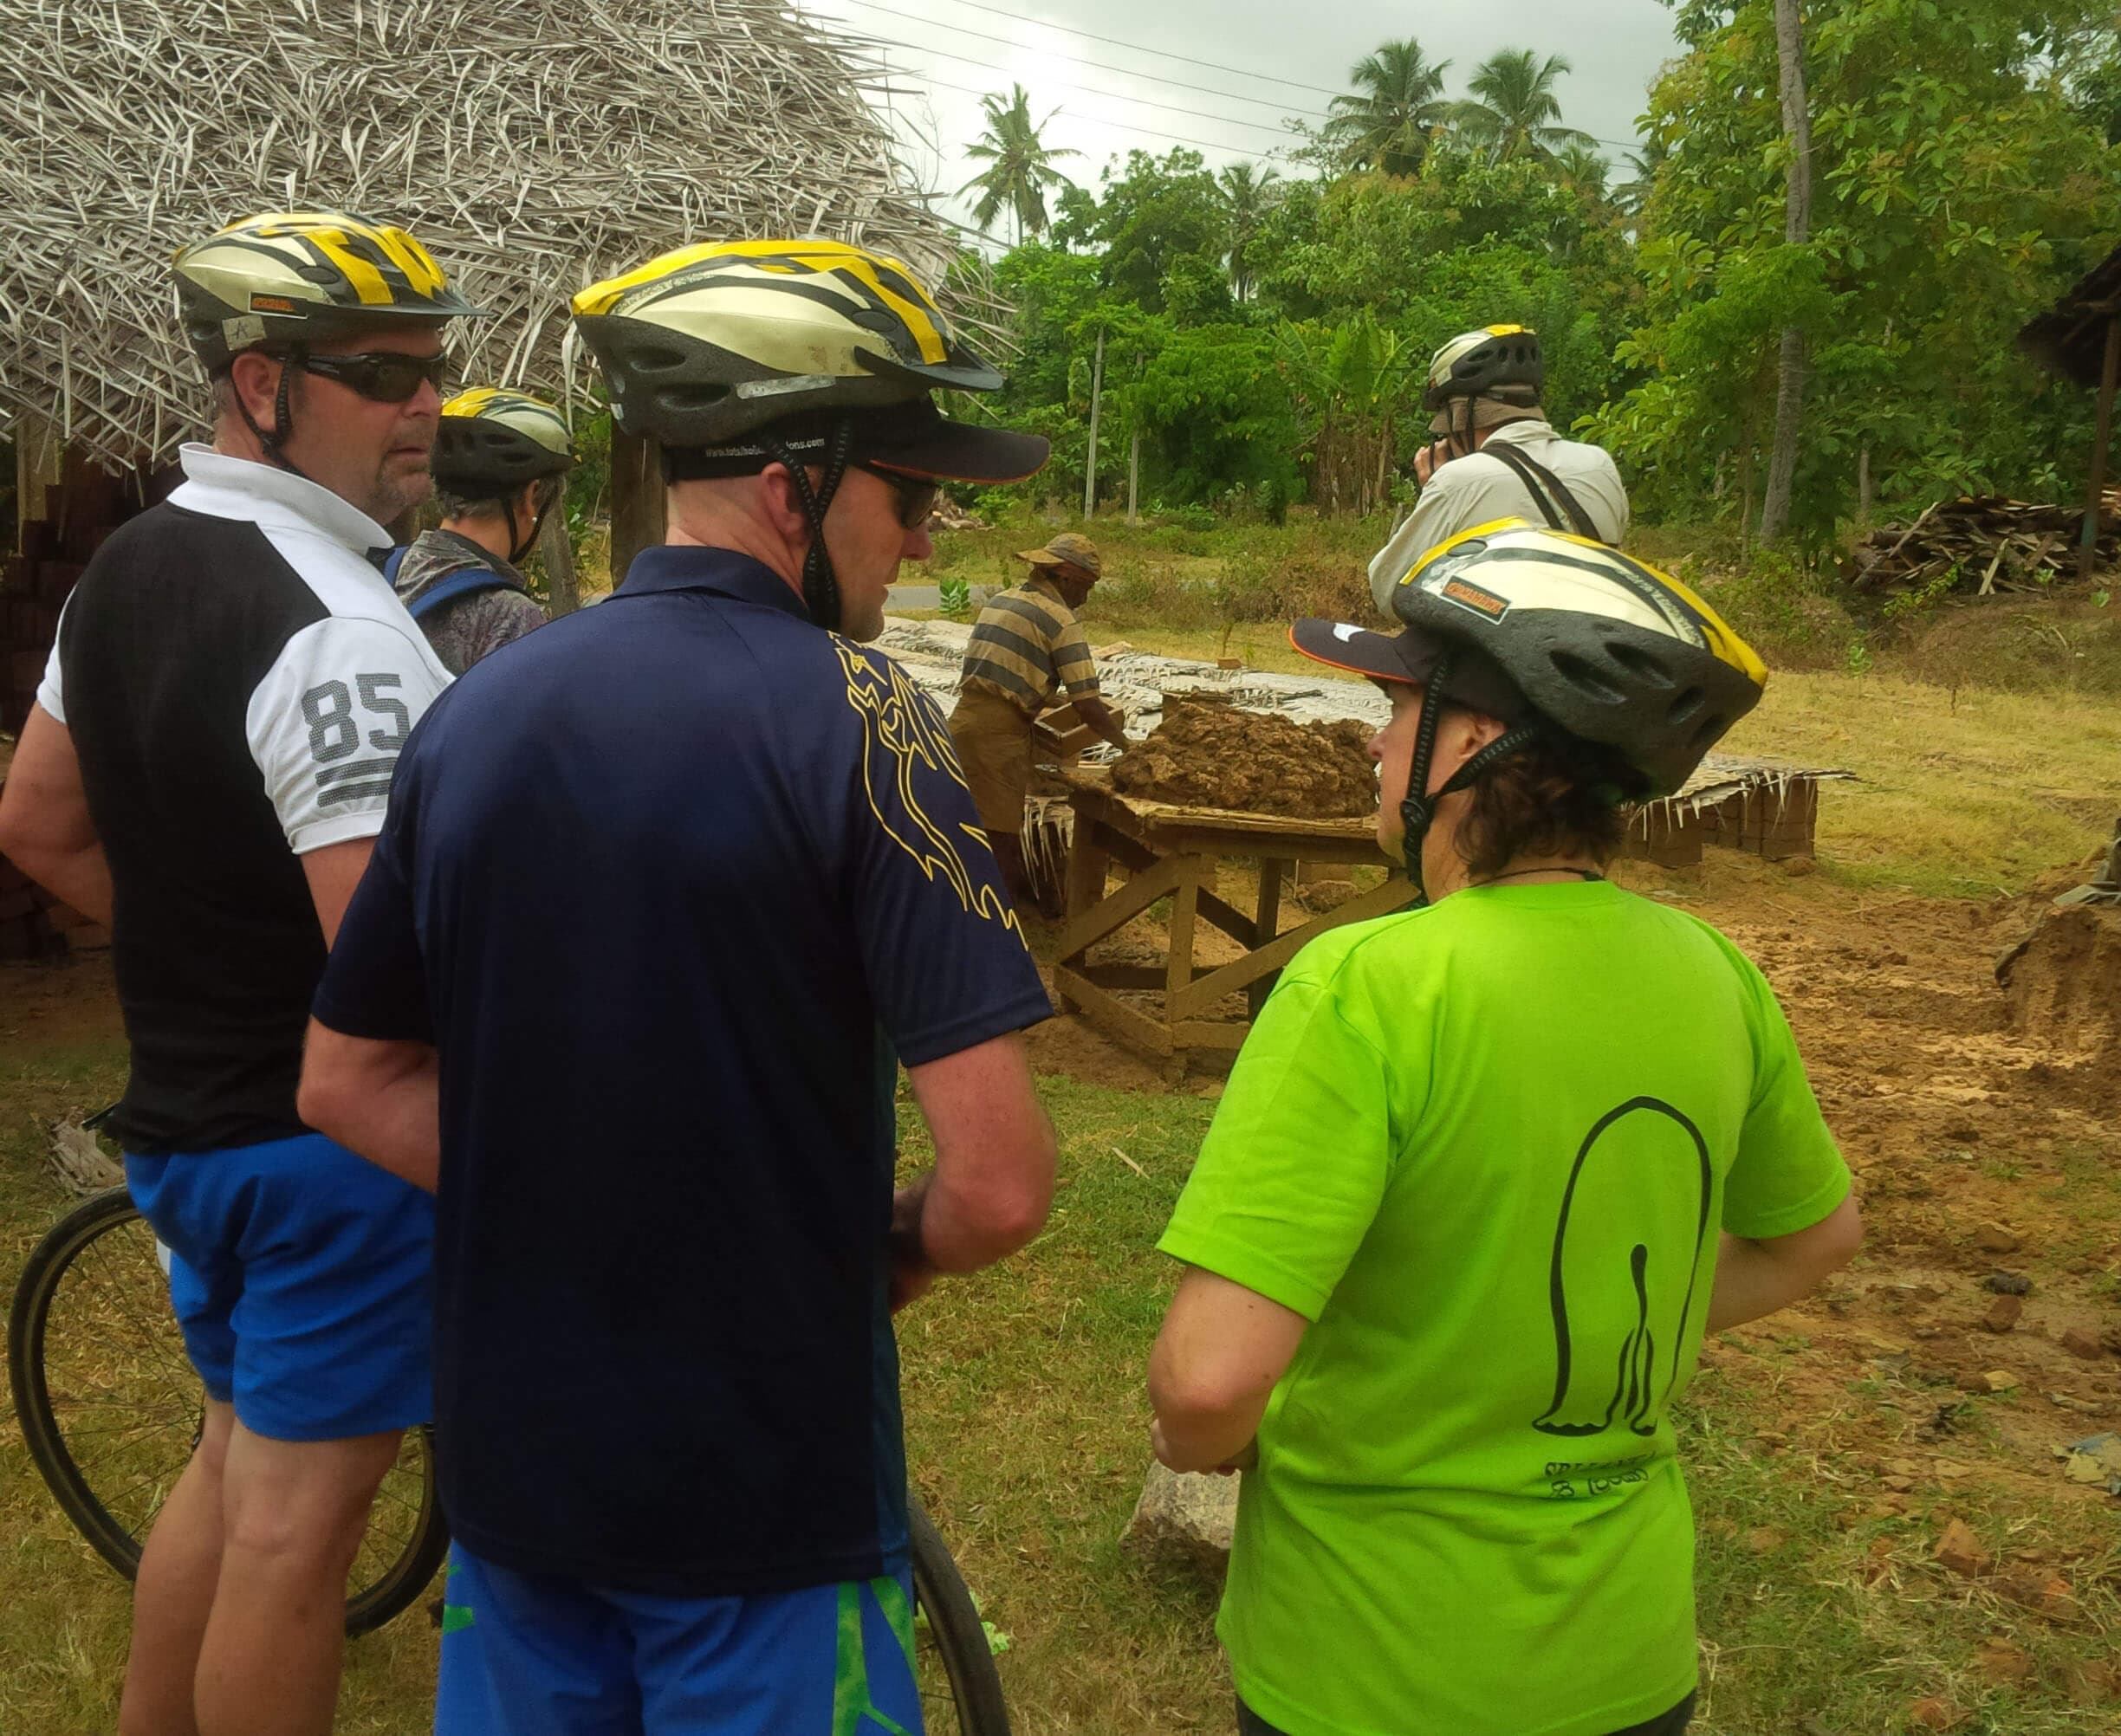 The cyclists explore clay bricks making process in Negombo Sri Lanka